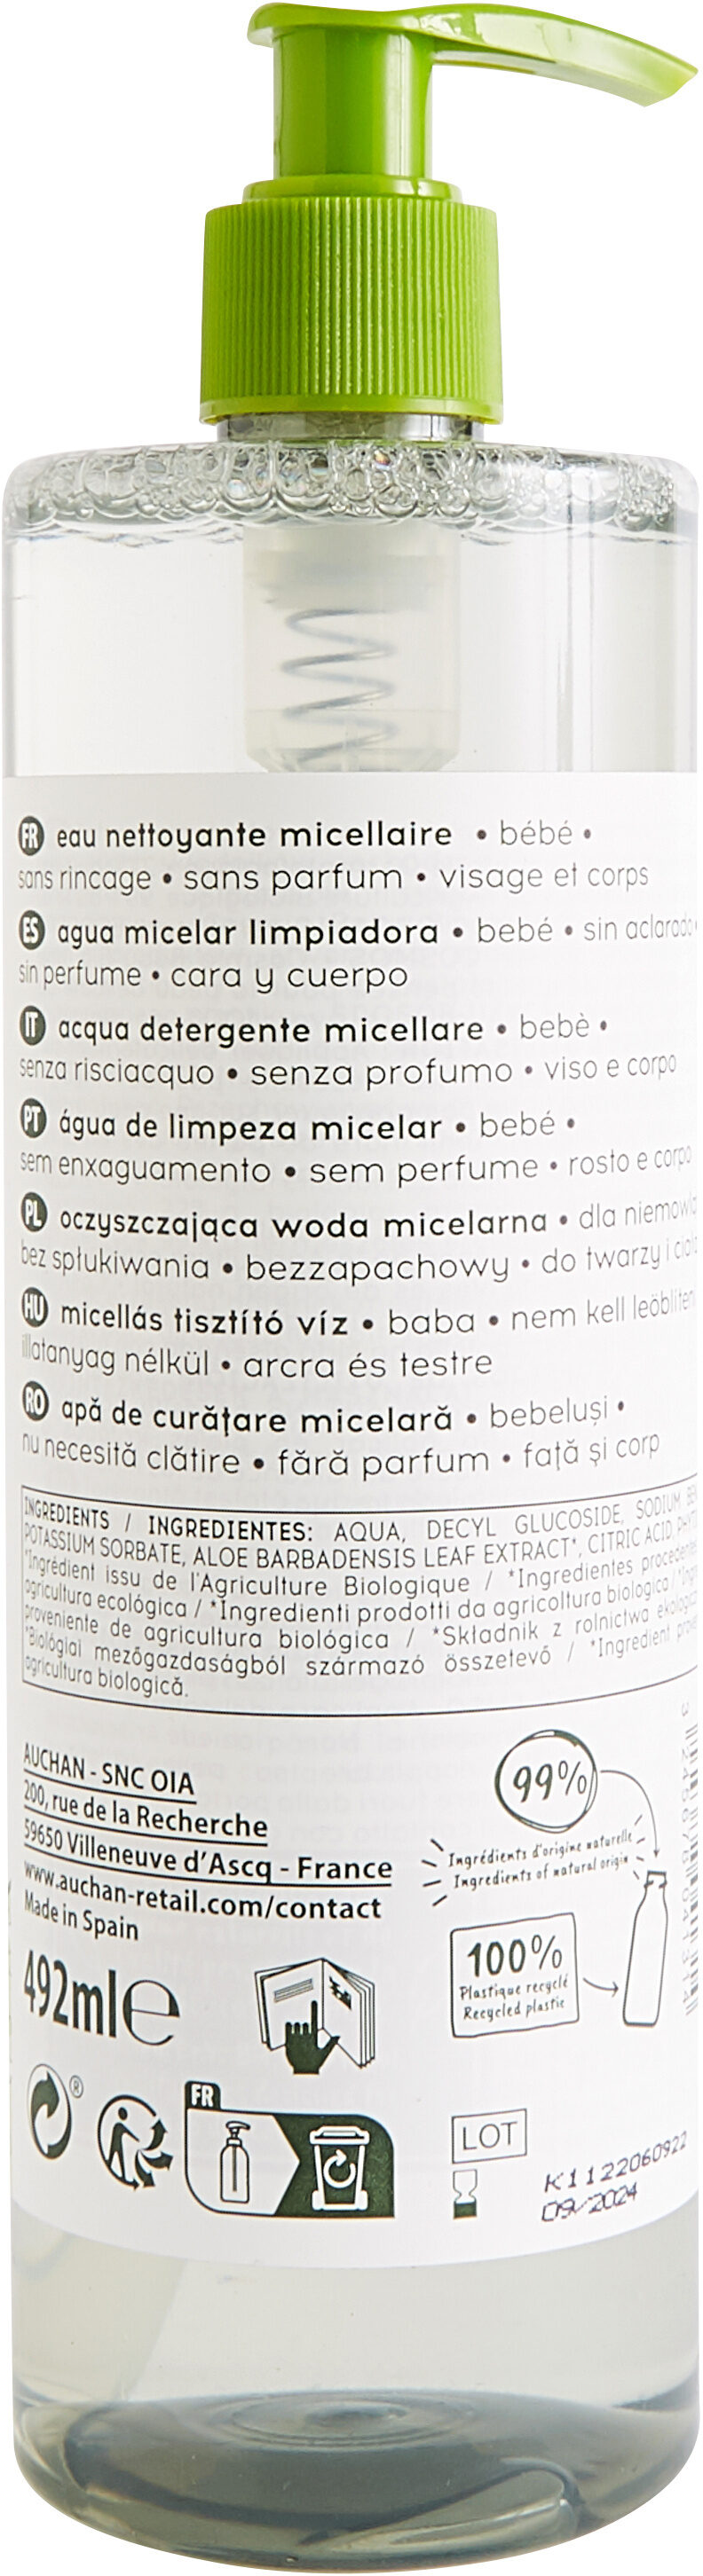 Auchan bio - eau nettoyante micellaire - sans rincage visage et corps - bébé - 492 ml - Product - en